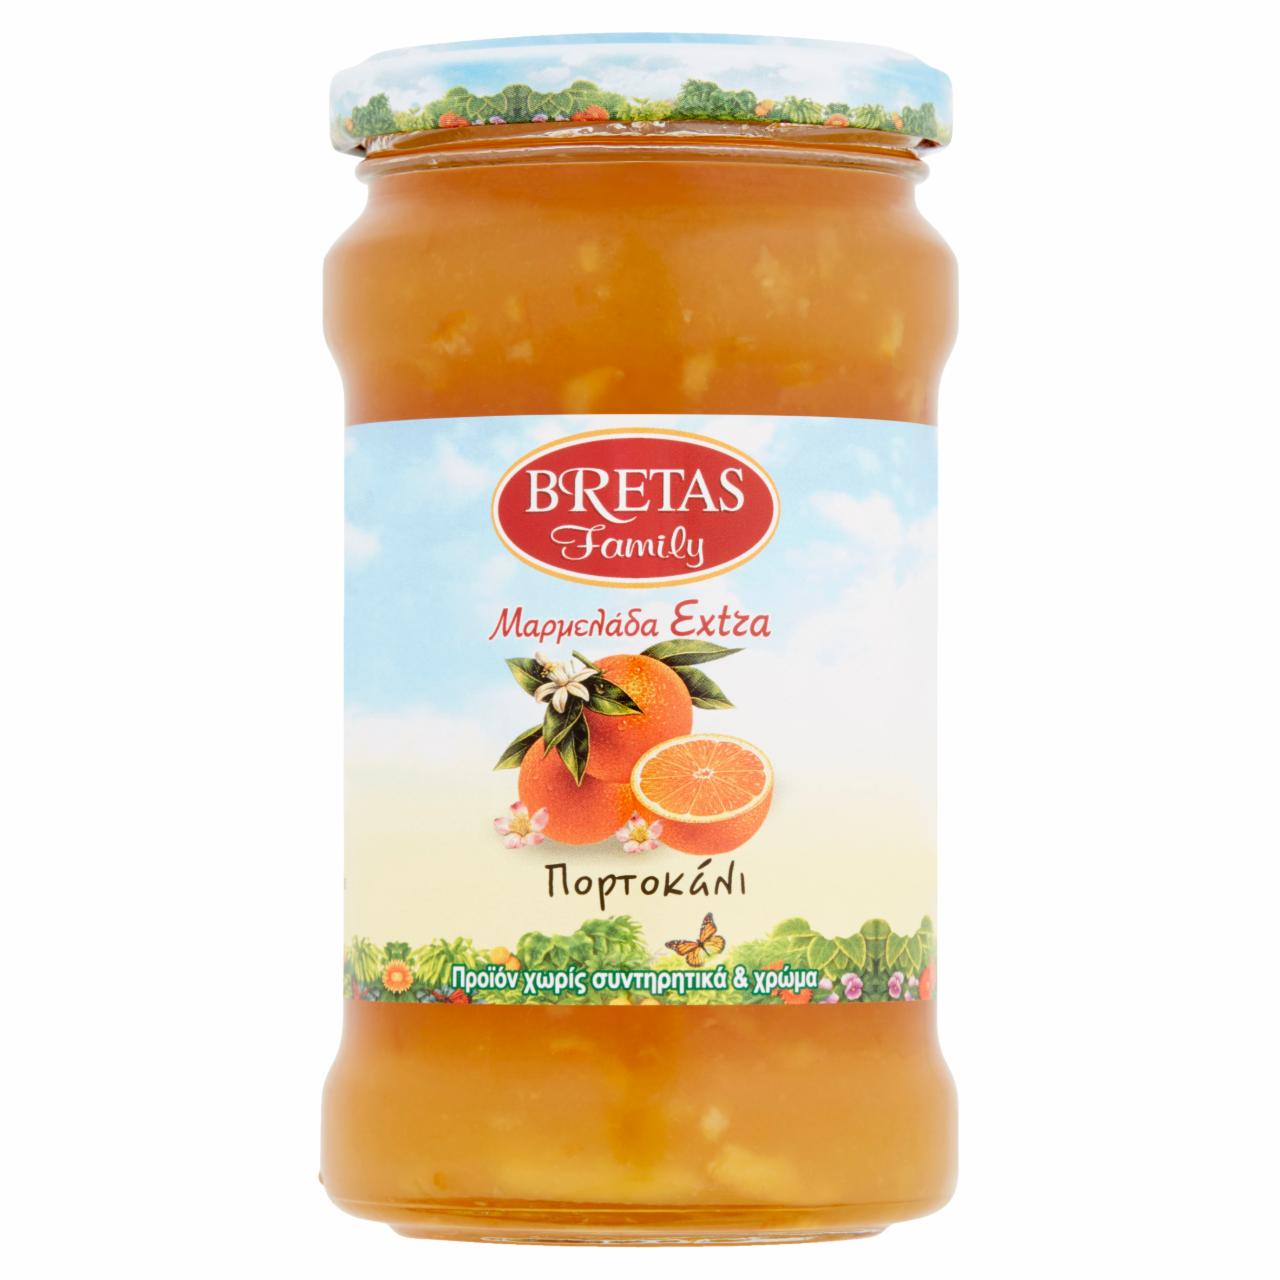 Képek - Bretas Family narancs lekvár extra 370 g